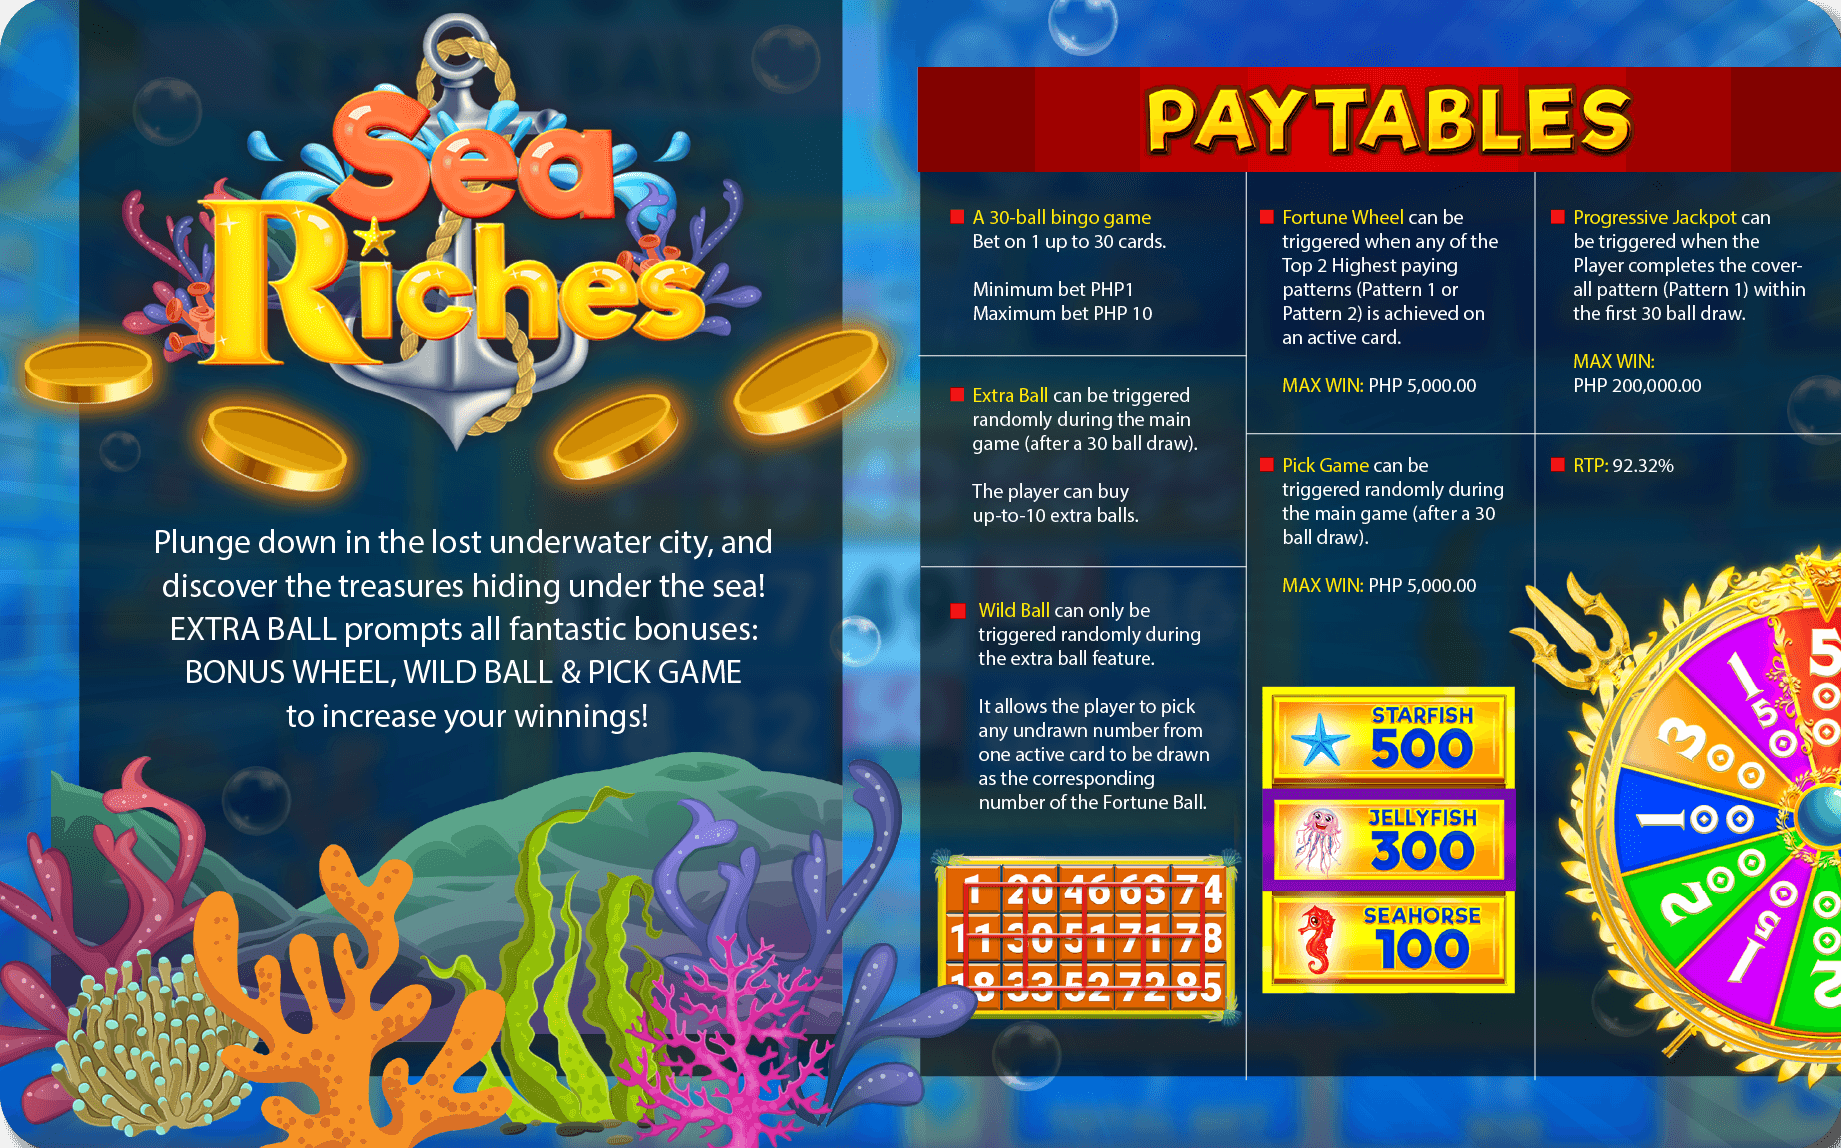 https://dynastygaming.com/e-bingo-games/sea-riches/